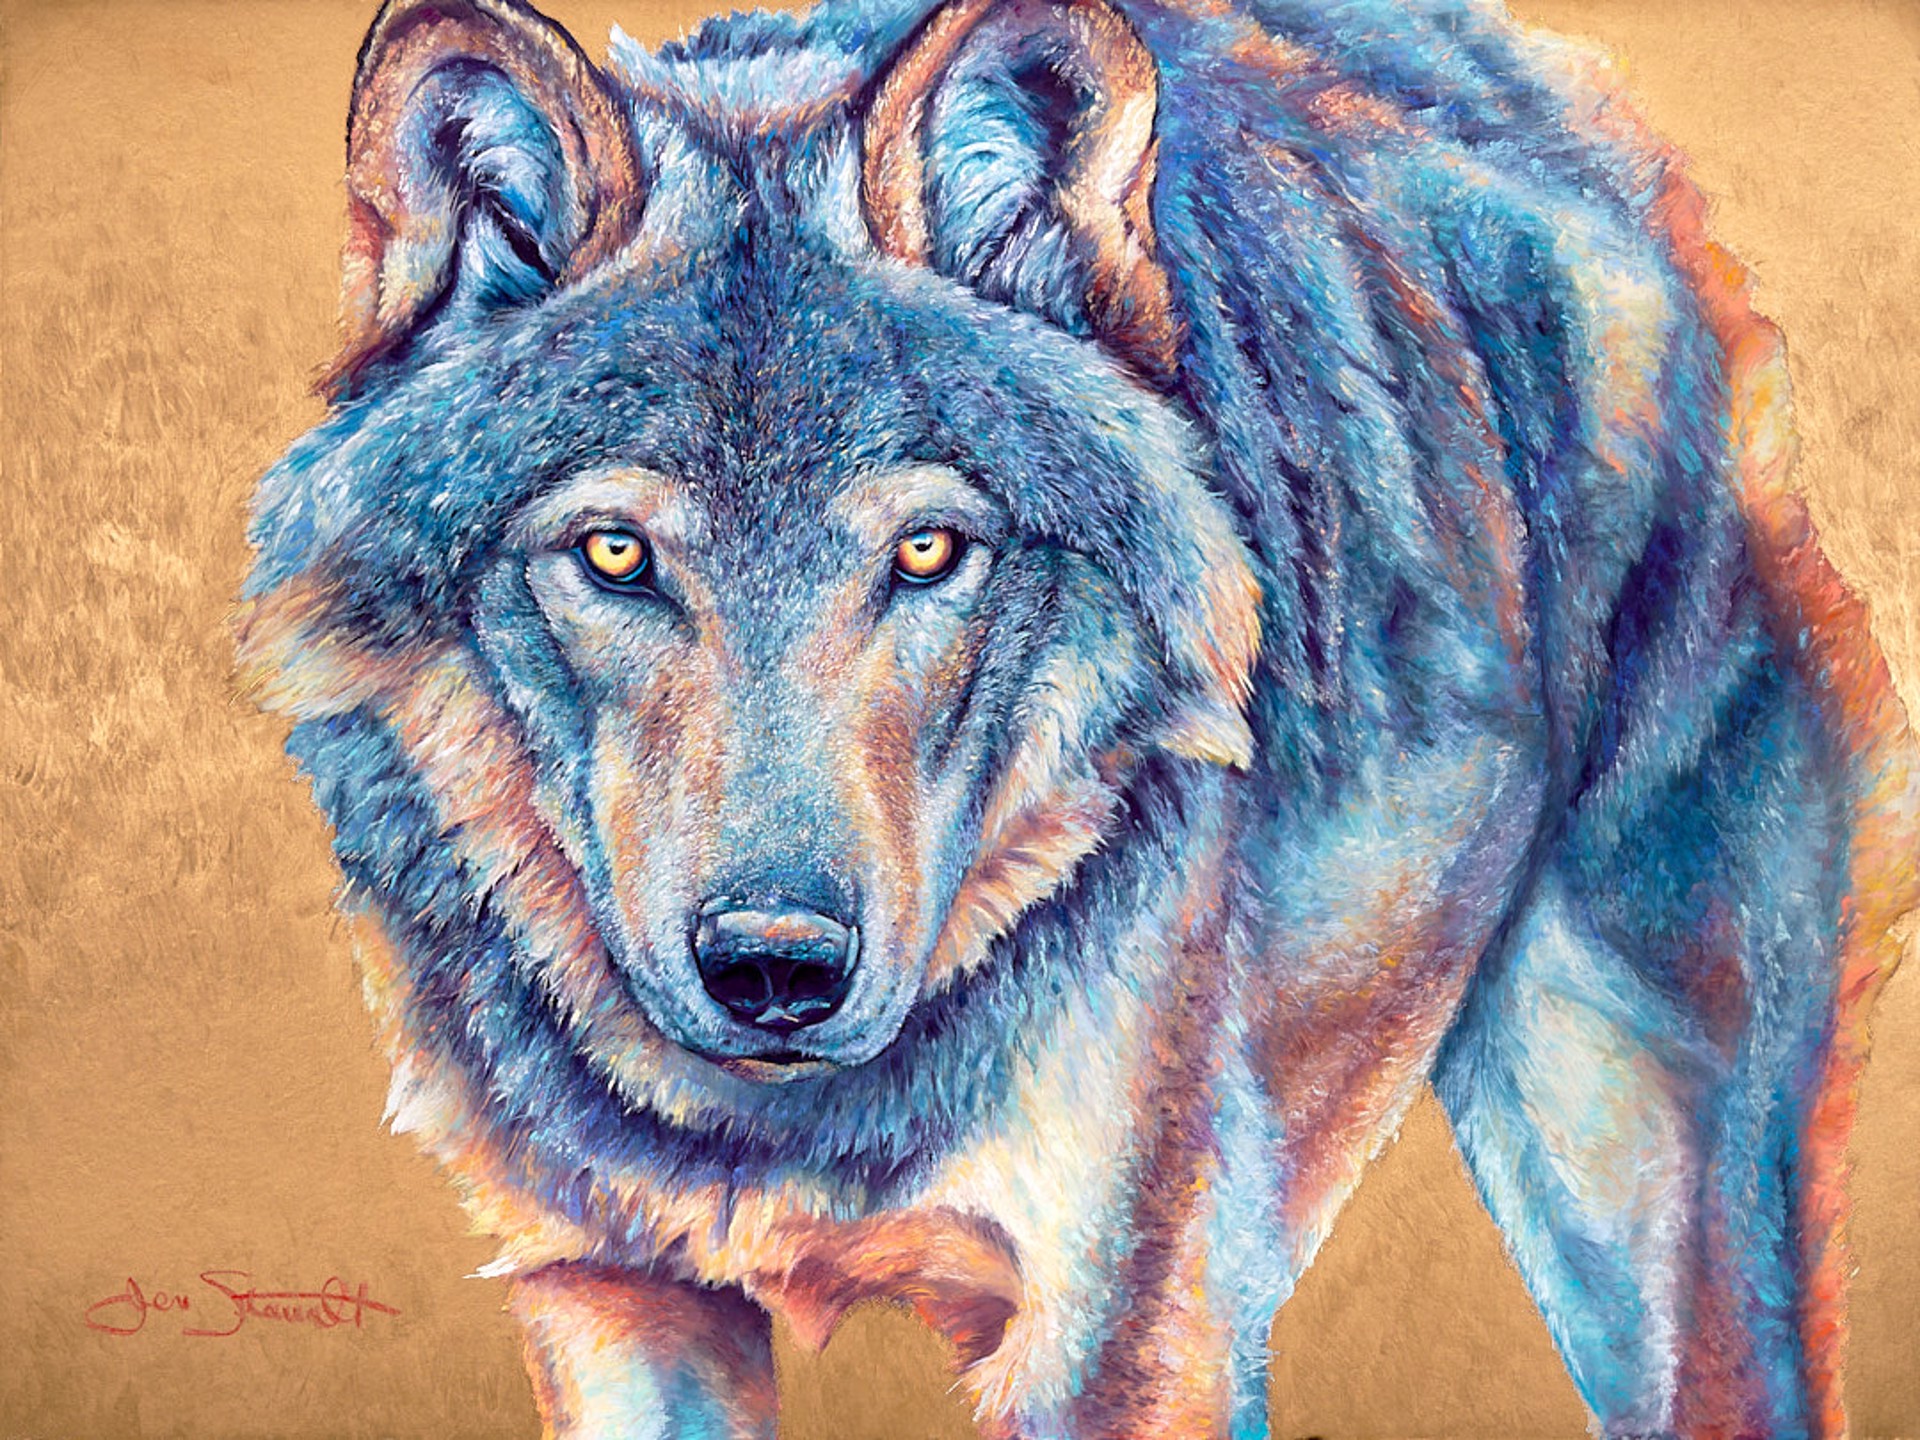 Wolf by Jen Starwalt